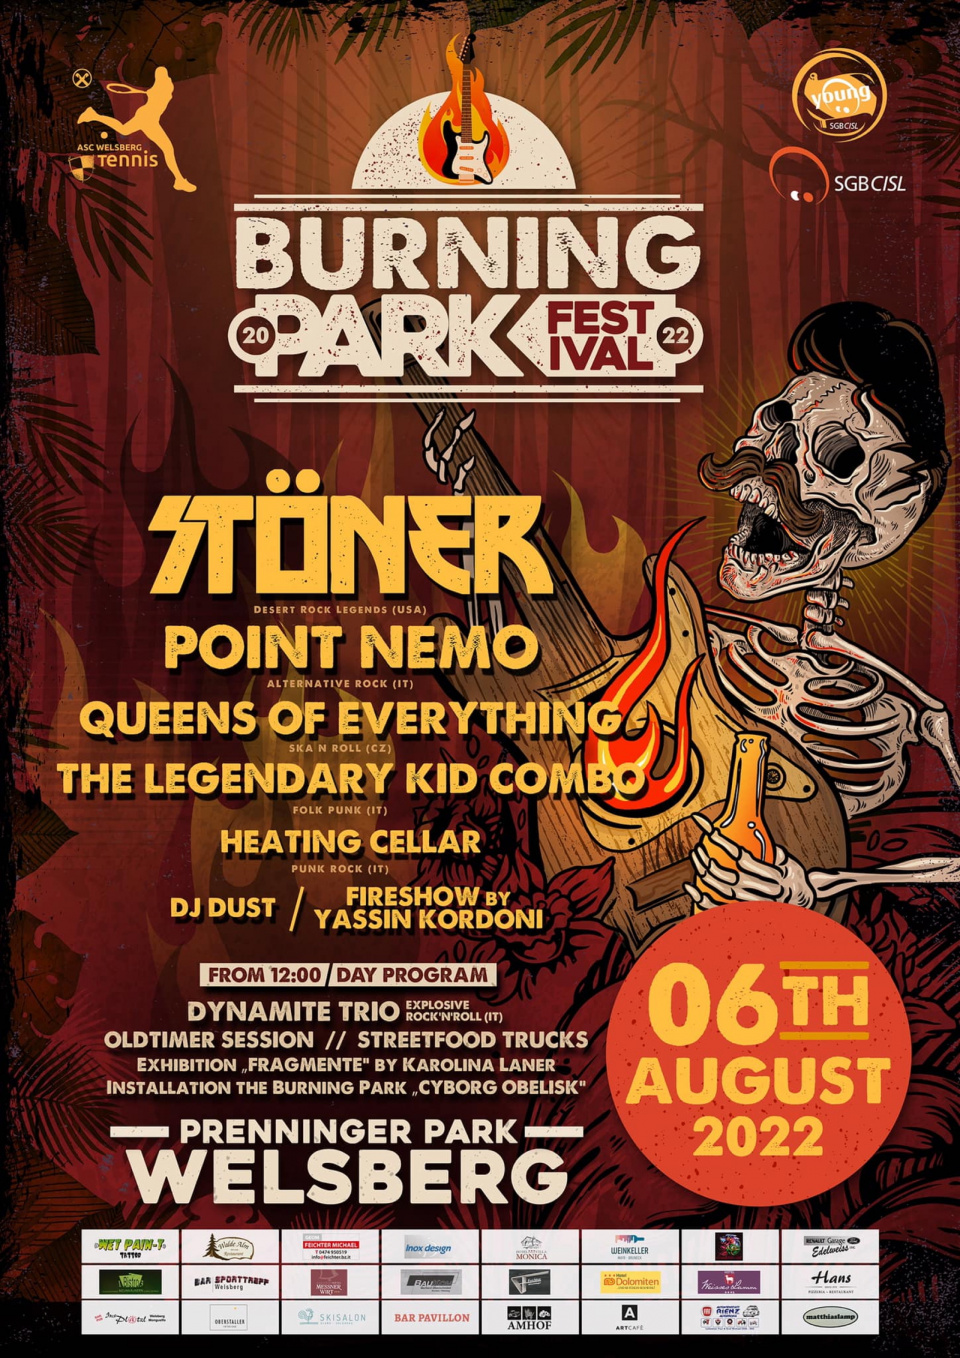 Das Angebot ist breit gefächert und über den gesamten Tag verteilt: Das „Burning Park Festival” beginnt um 12 Uhr, die Livebands werden ab 17 Uhr zu sehen sein.